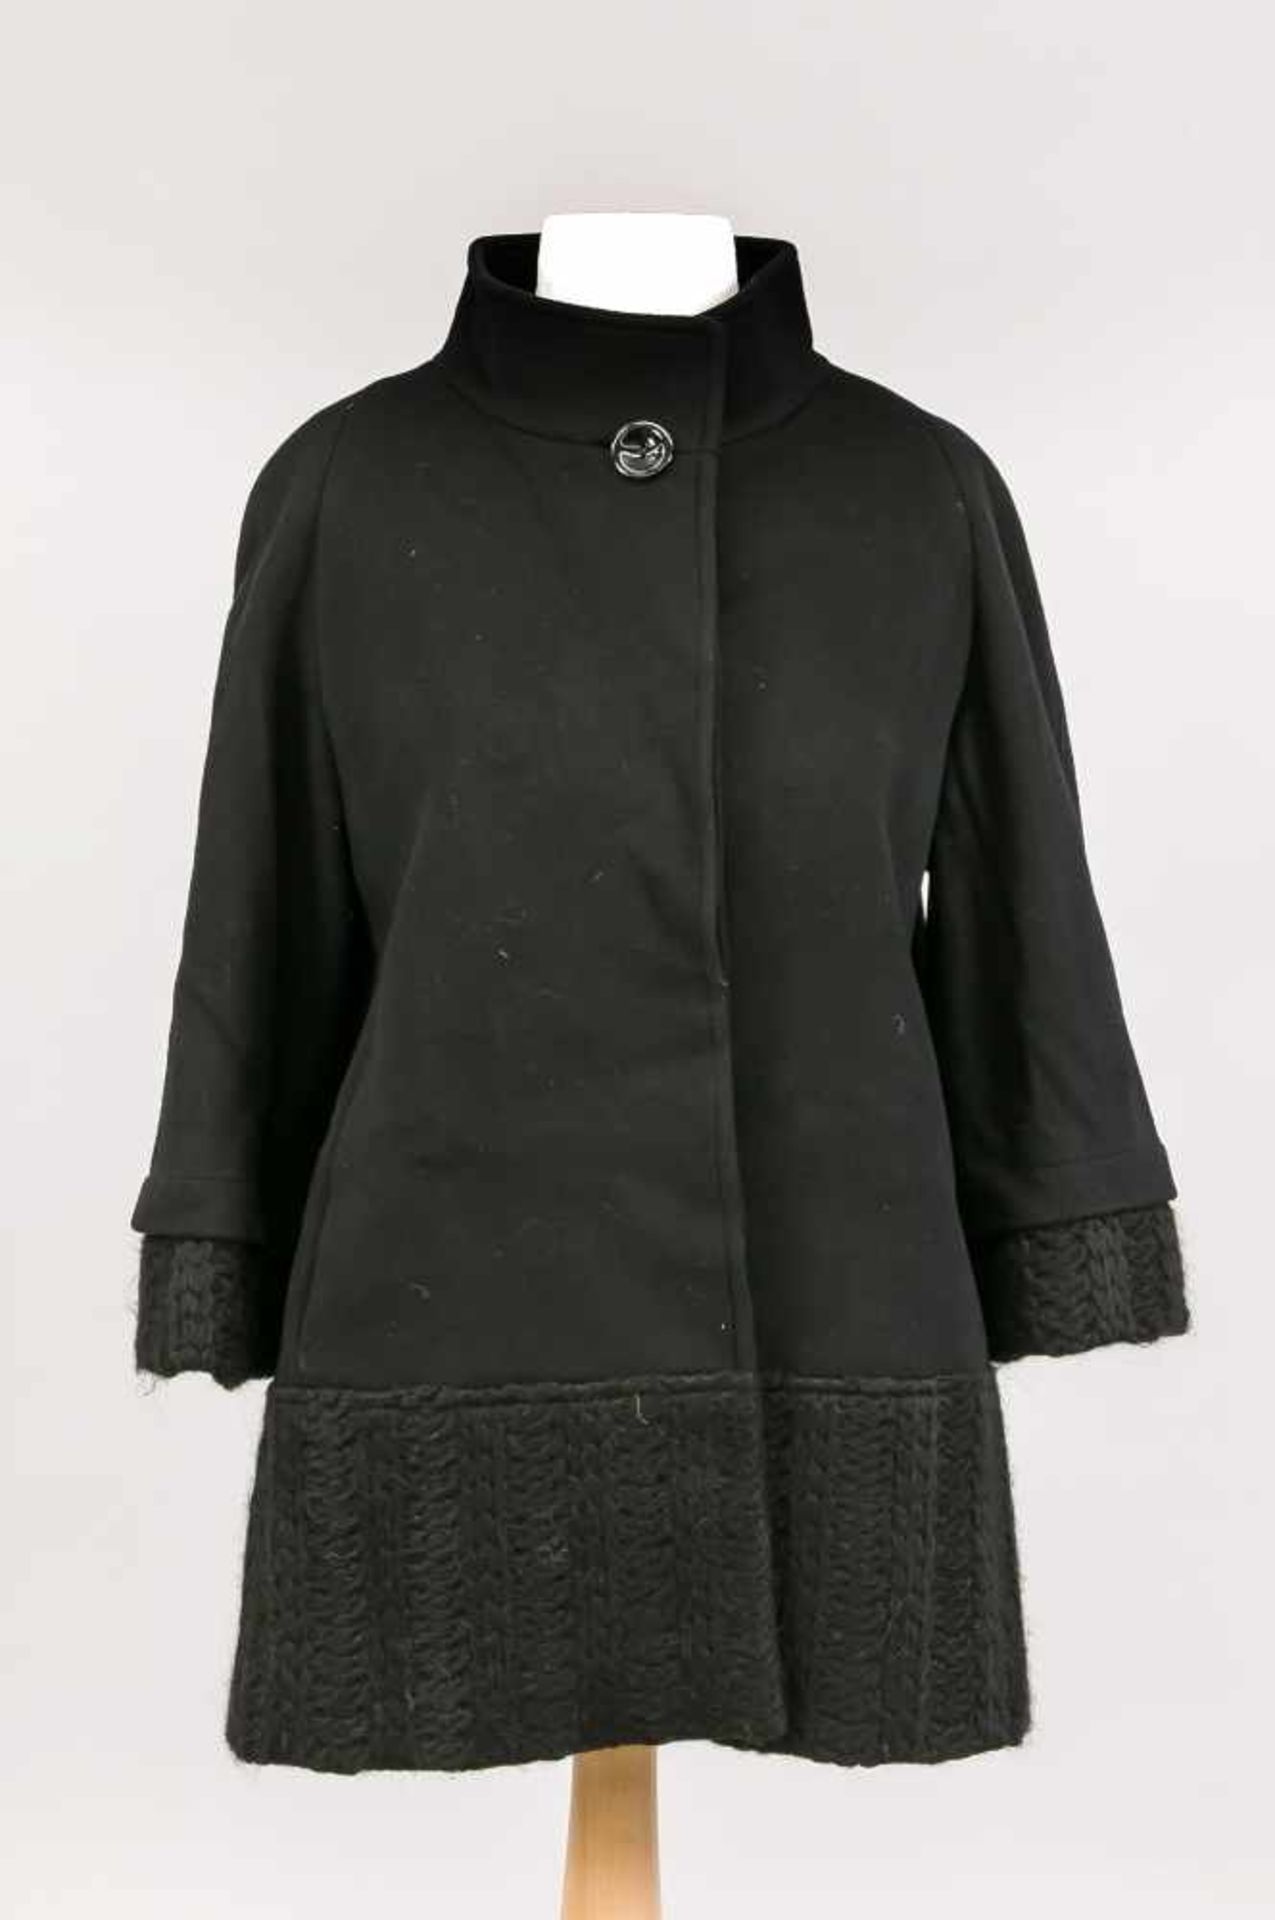 Damenwolljacke, Cinzia Rocca, Gr. 36, schwarz mit Strickdetails an Ärmelabschlüssen und